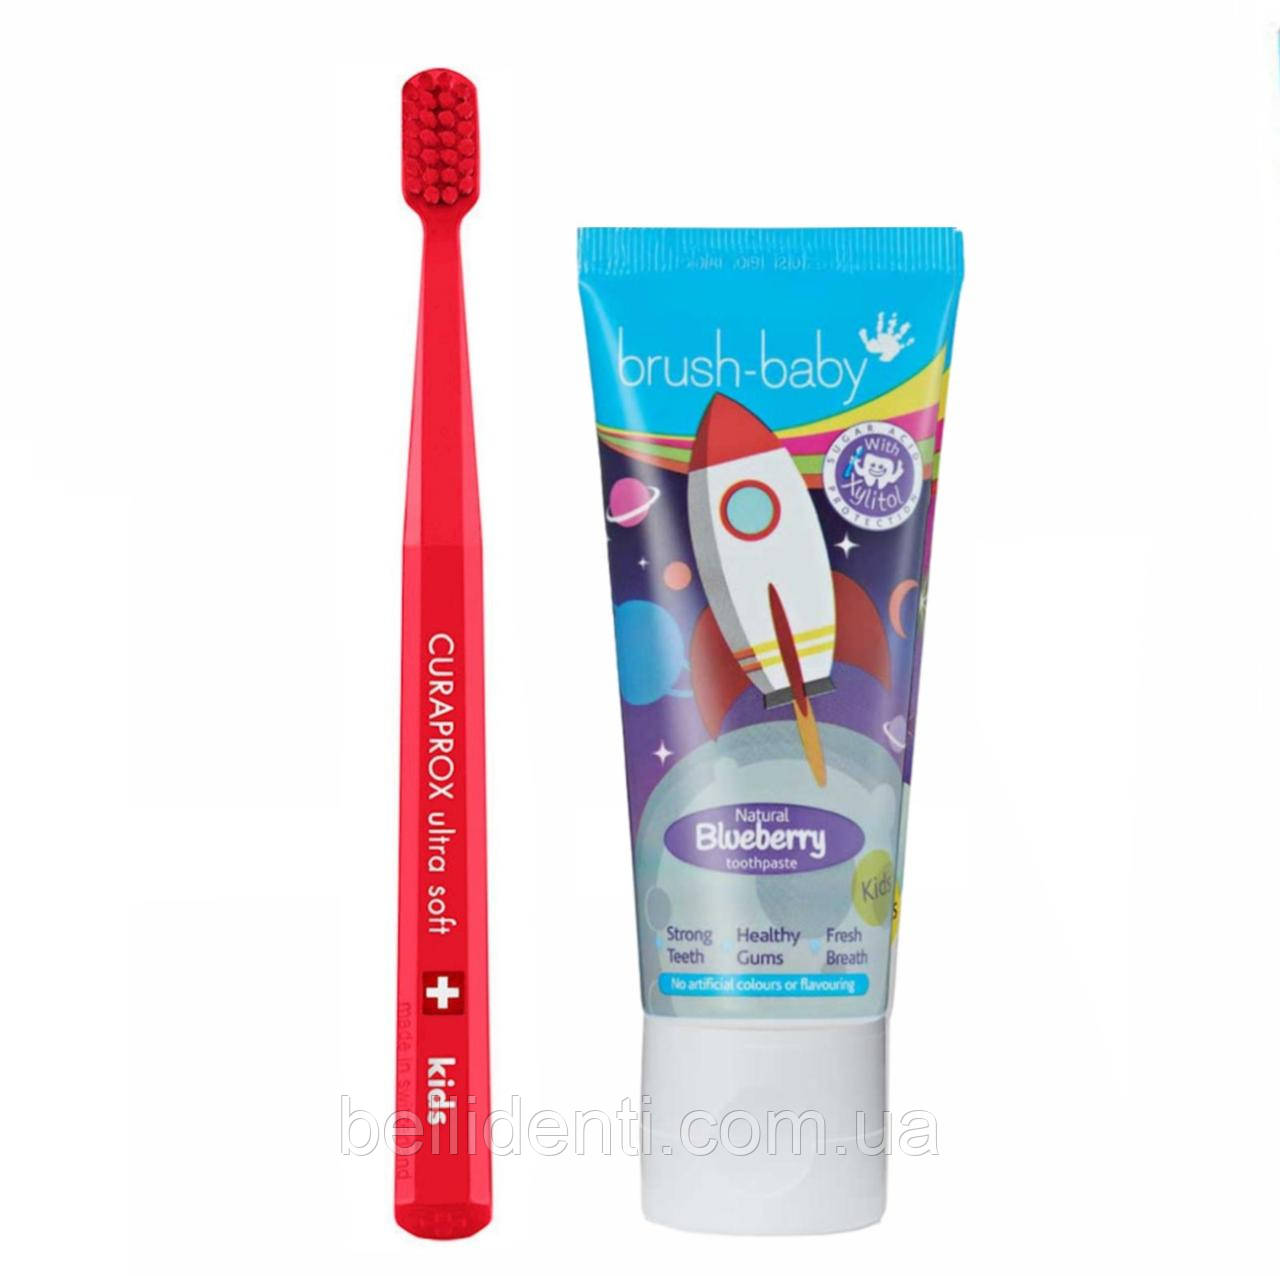 Набір Curaprox Brush-Baby від 4 до 12 років (зубна паста та червона щітка), ракета